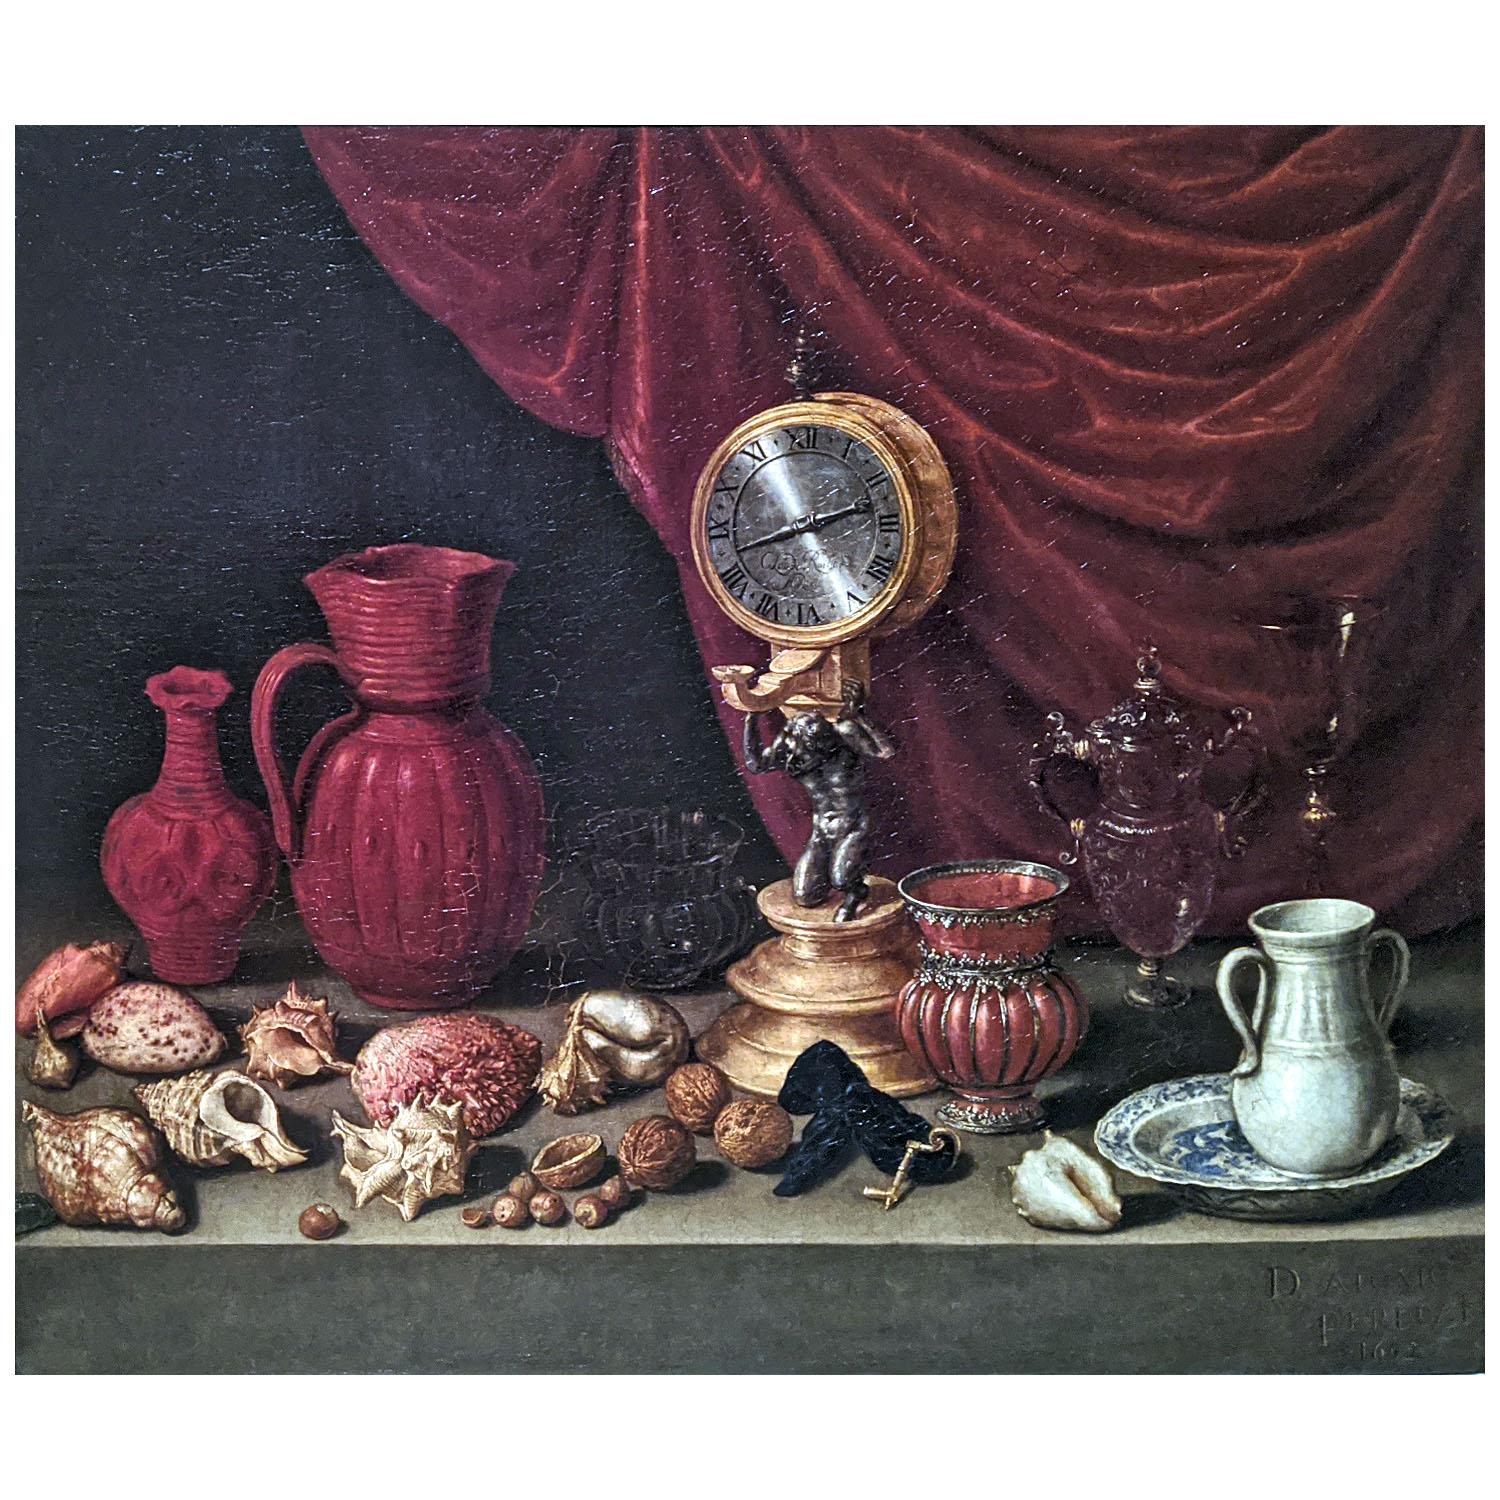 Антонио де Переда-и-Сальгадо. Натюрморт с часами. 1652. ГМИИ им. Пушкина